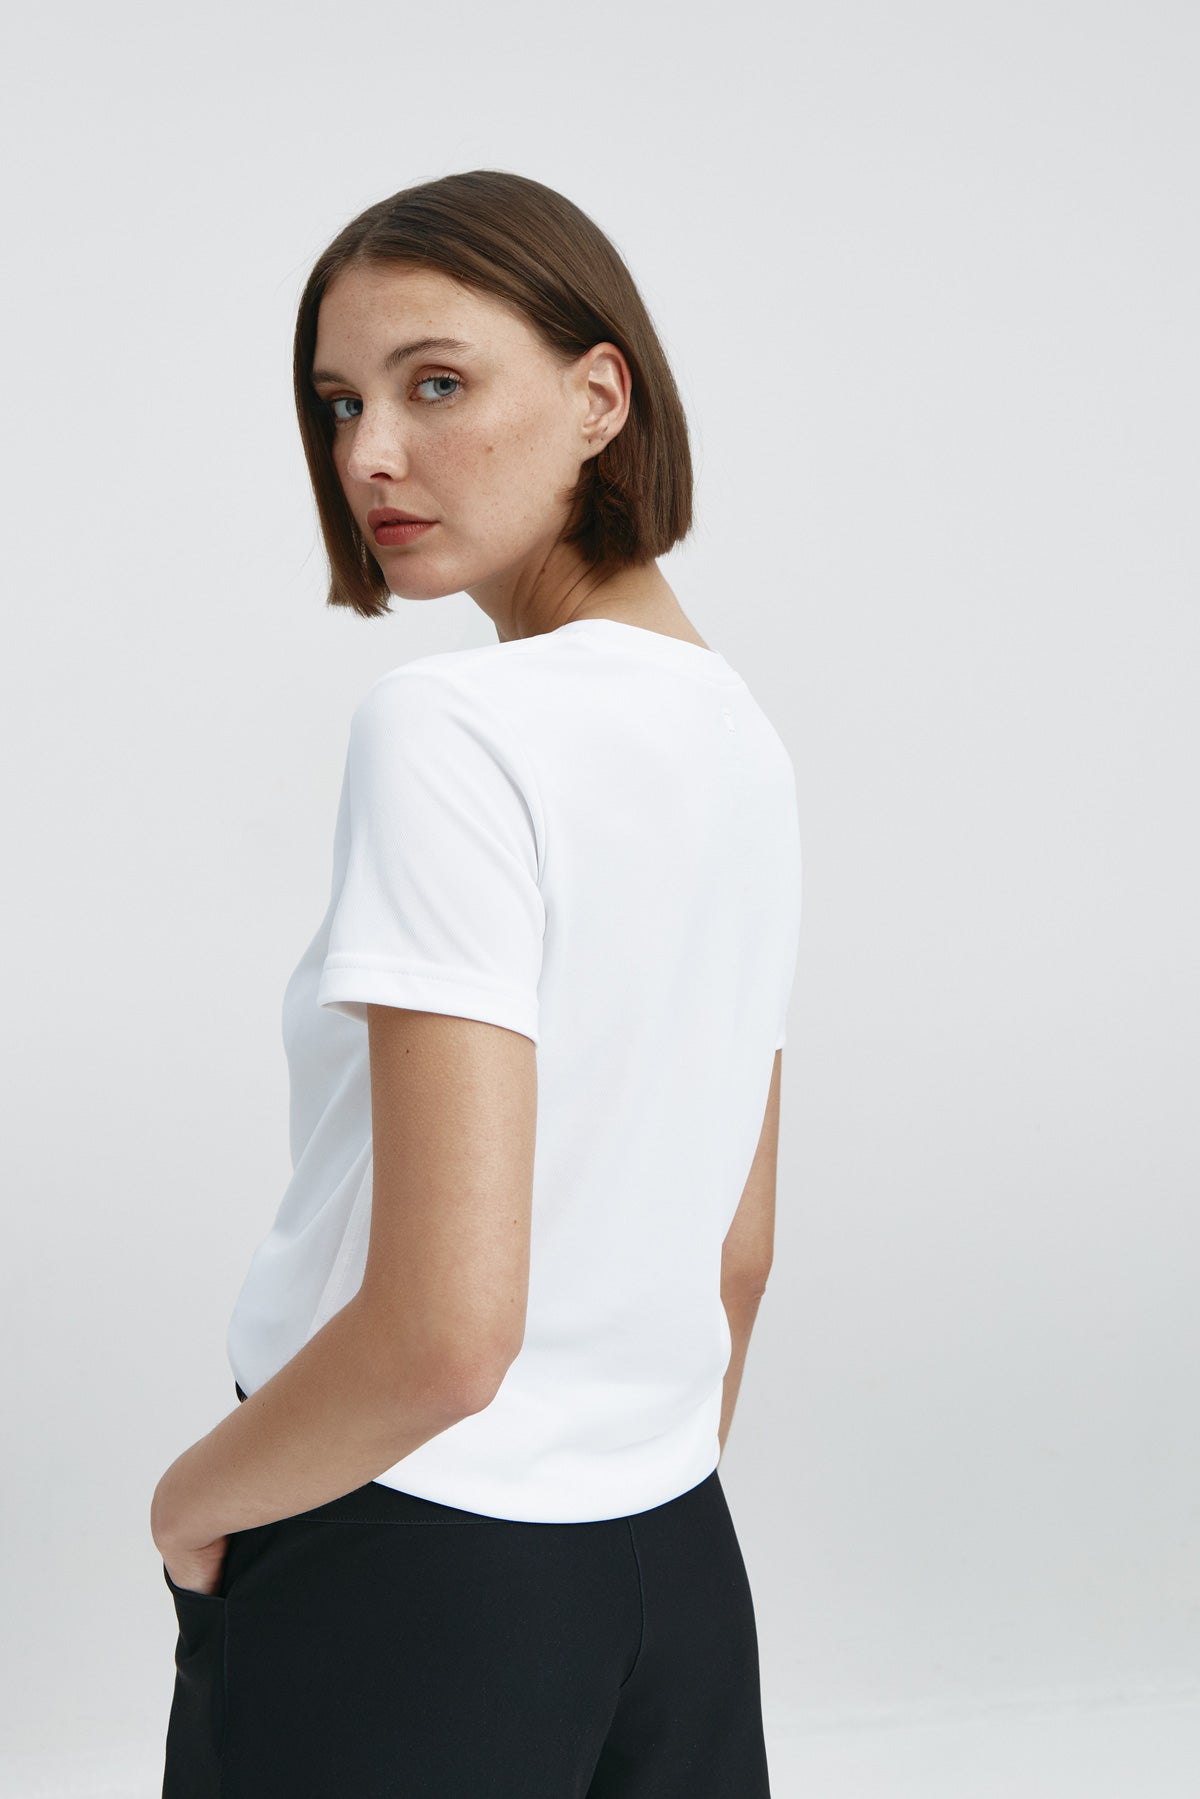 Camiseta básica de mujer blanca de manga corta, antiarrugas y antimanchas. 